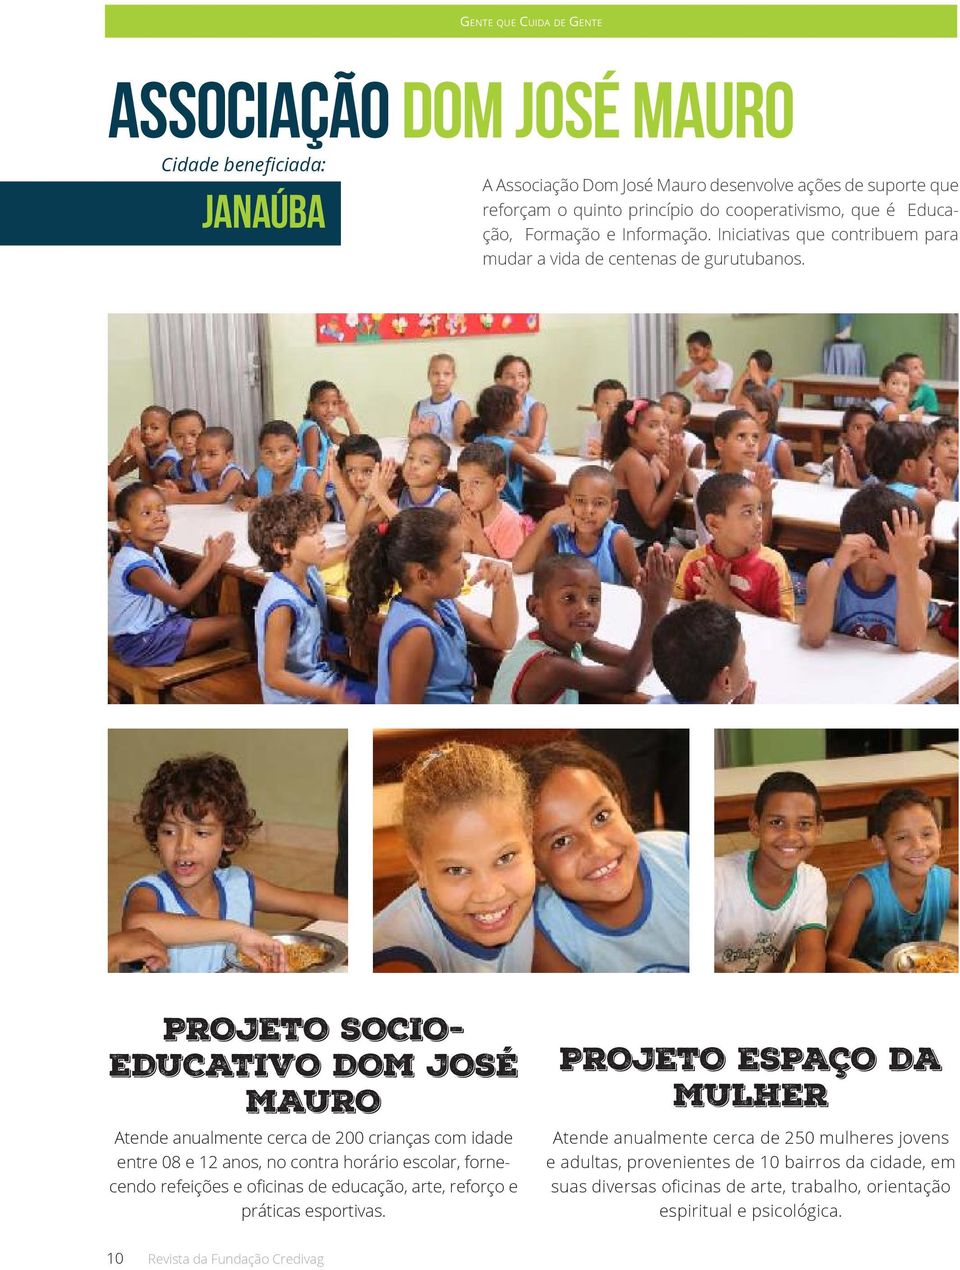 PROJETO SOCIO- EDUCATIVO DOM JOSÉ MAURO Atende anualmente cerca de 200 crianças com idade entre 08 e 12 anos, no contra horário escolar, fornecendo refeições e oficinas de educação, arte,